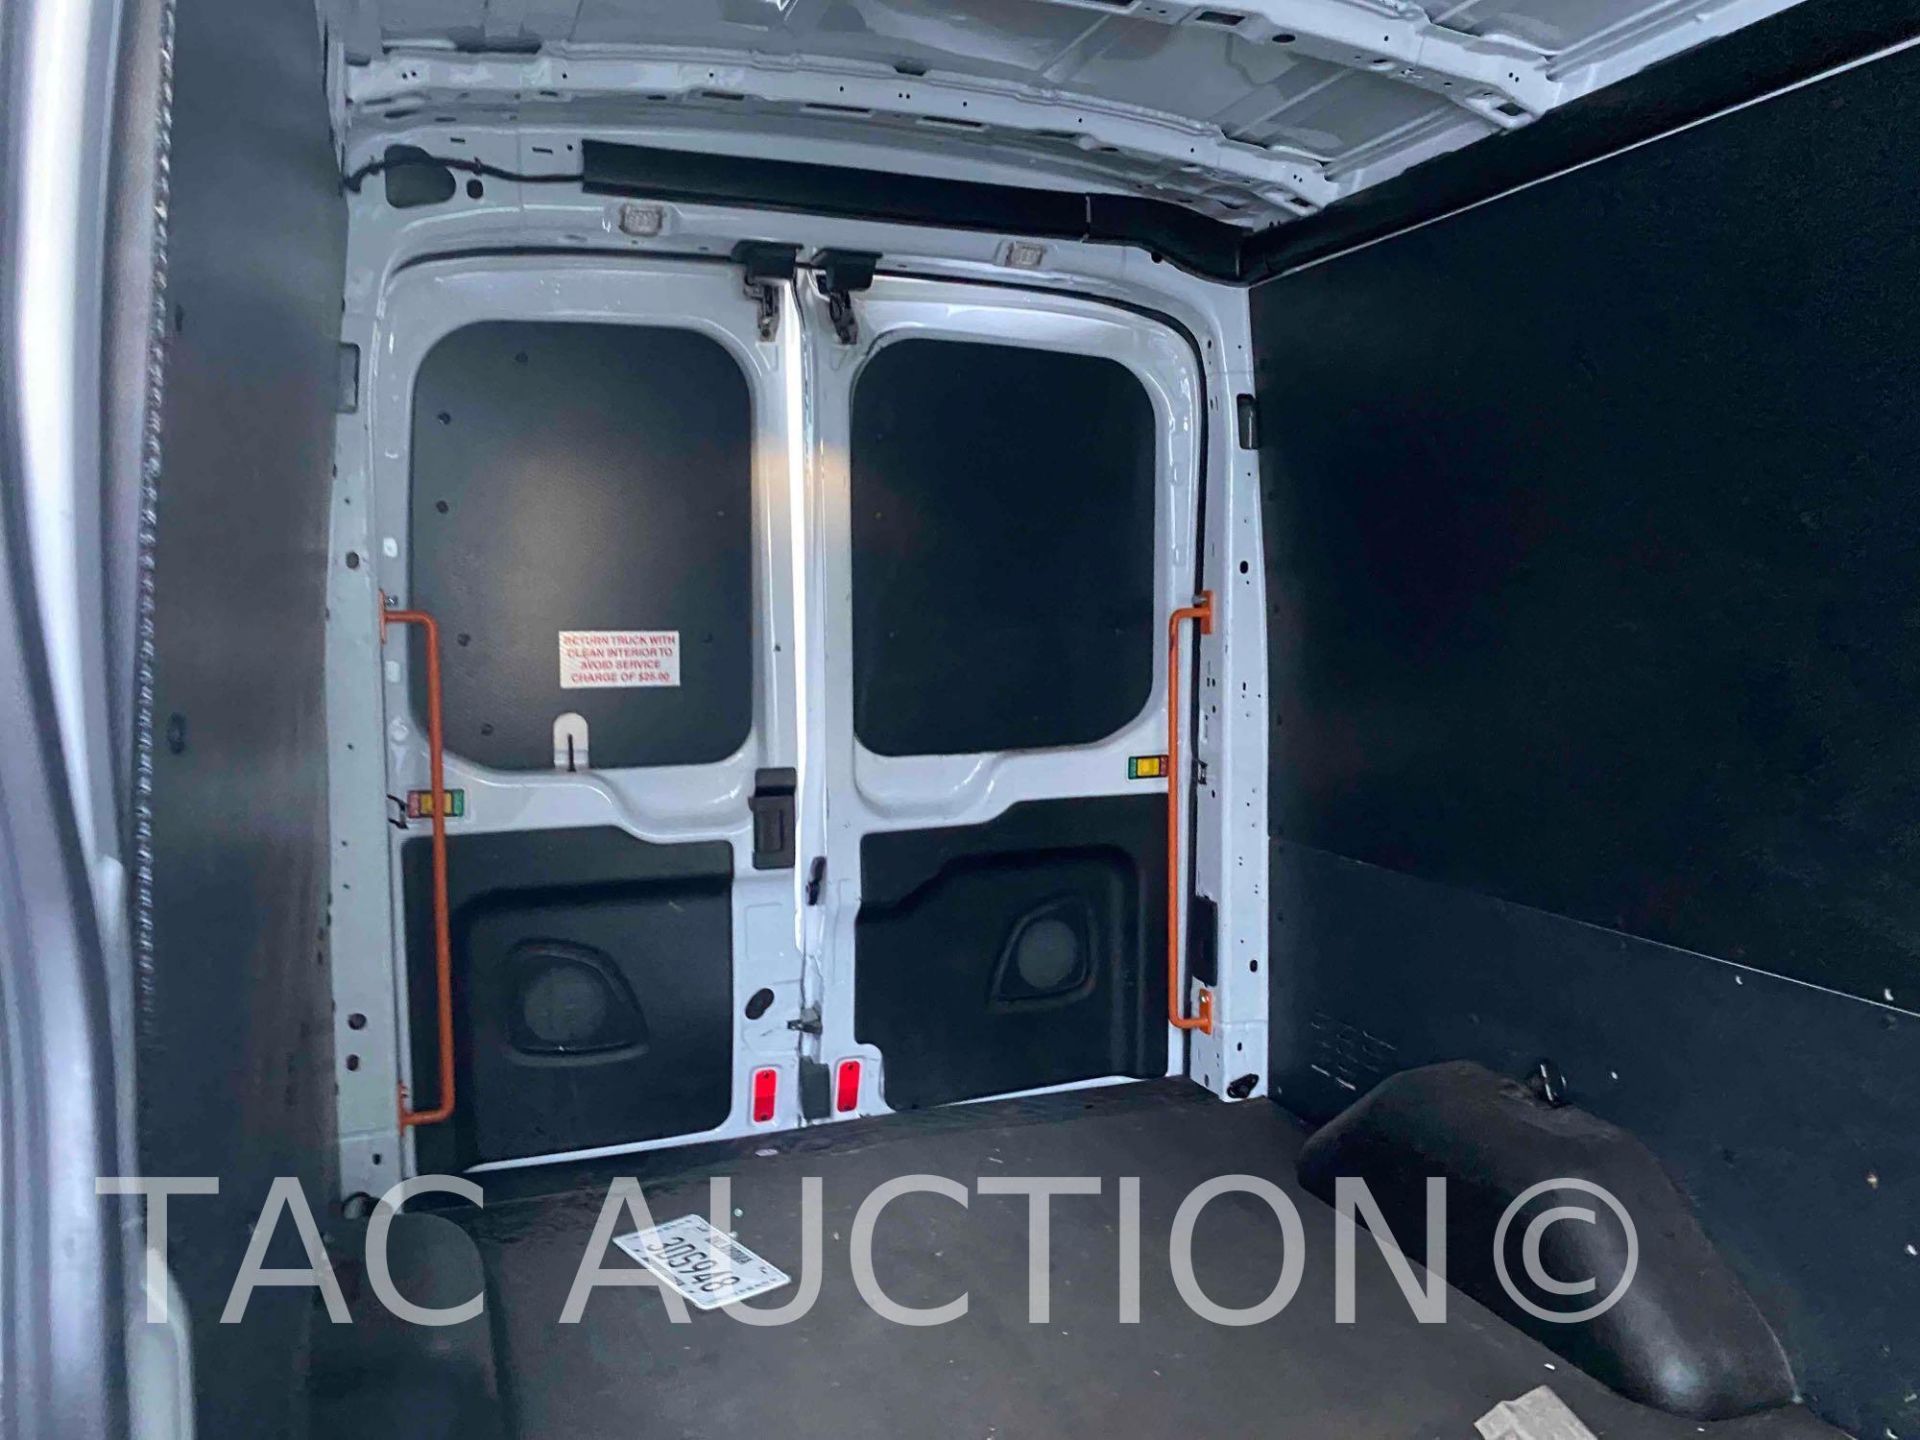 2019 Ford Transit 150 Cargo Van - Image 14 of 36